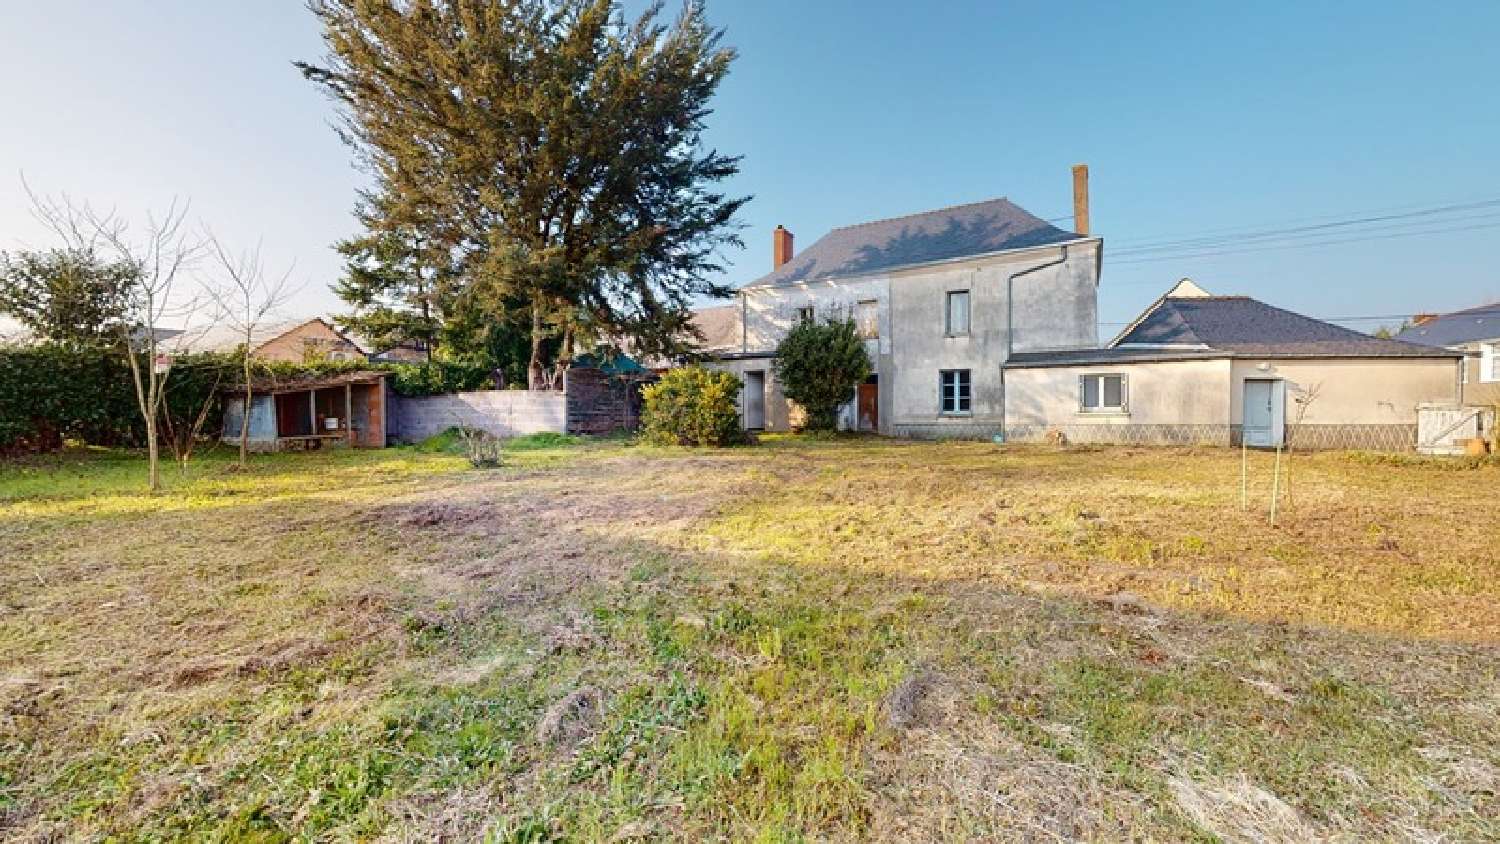  for sale village house Saint-Mars-la-Jaille Loire-Atlantique 1